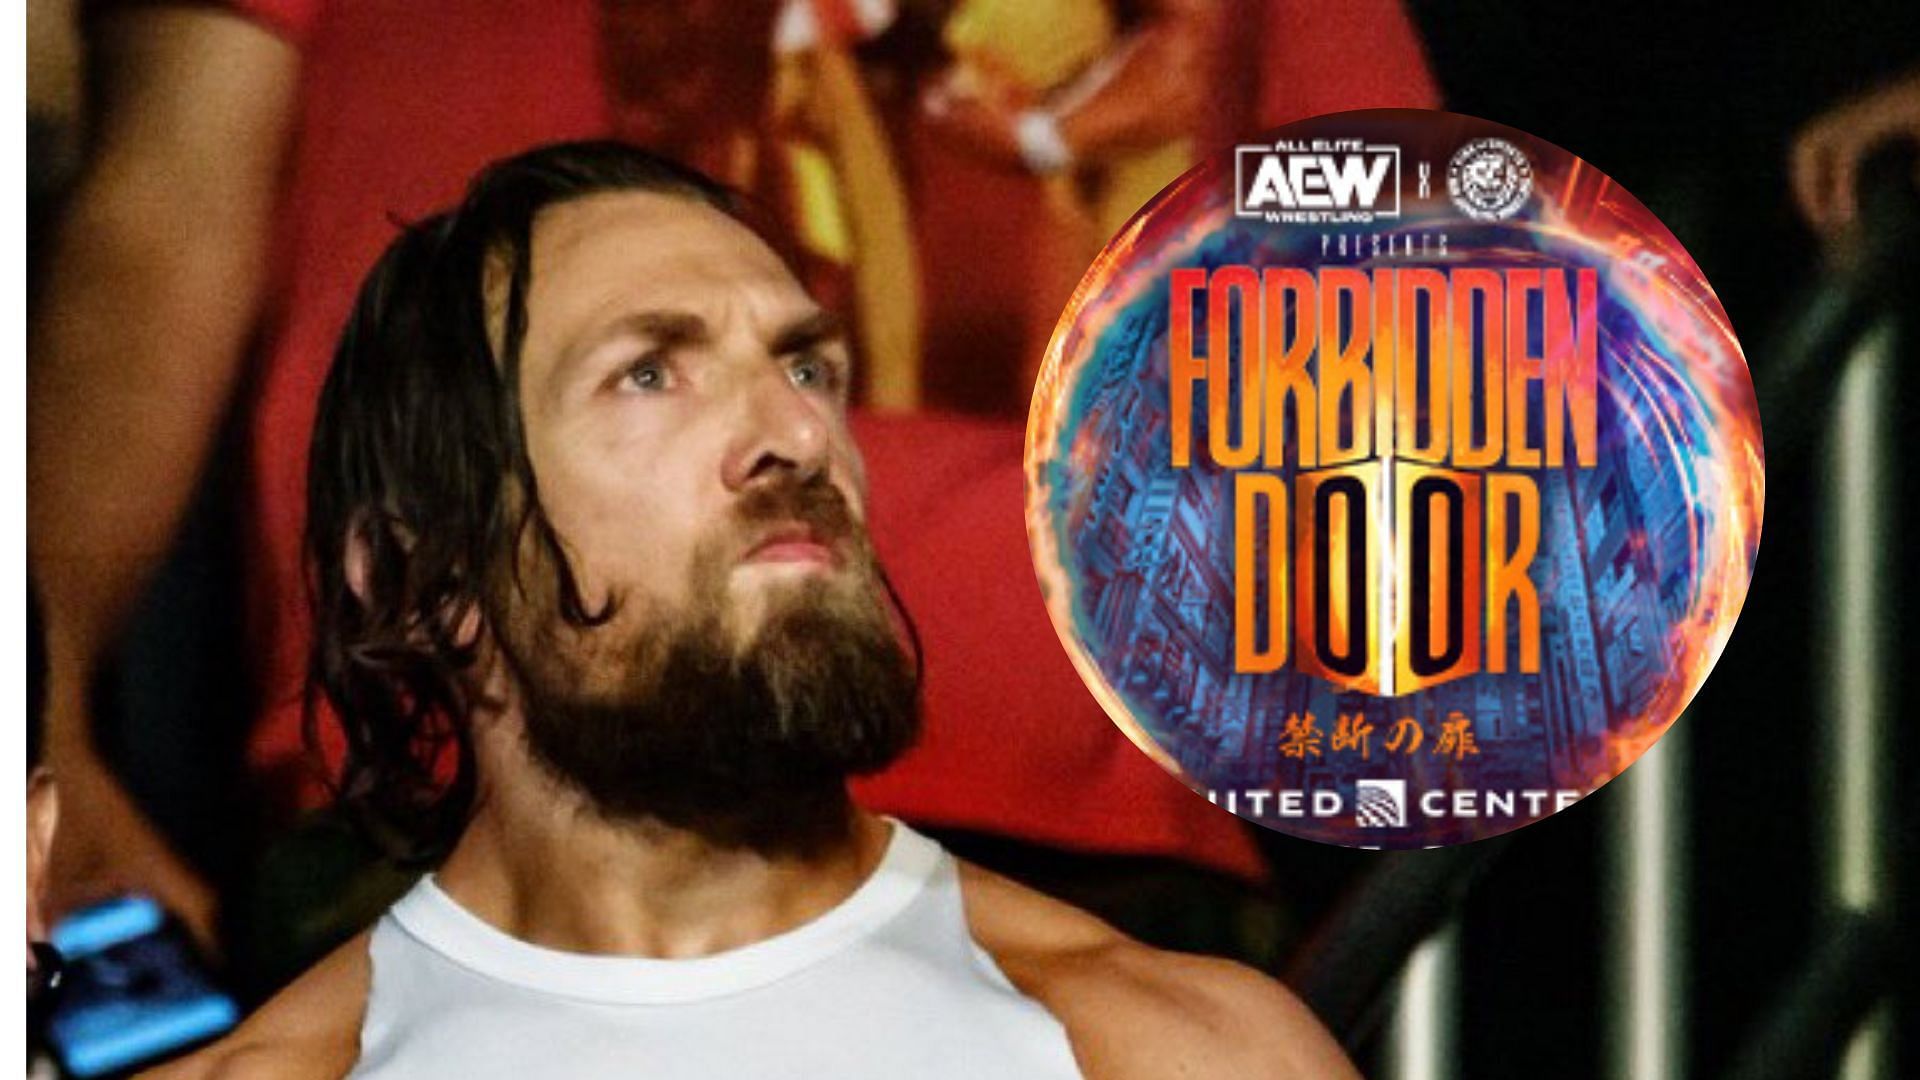 An epic rematch may await Bryan Danielson at Forbidden Door